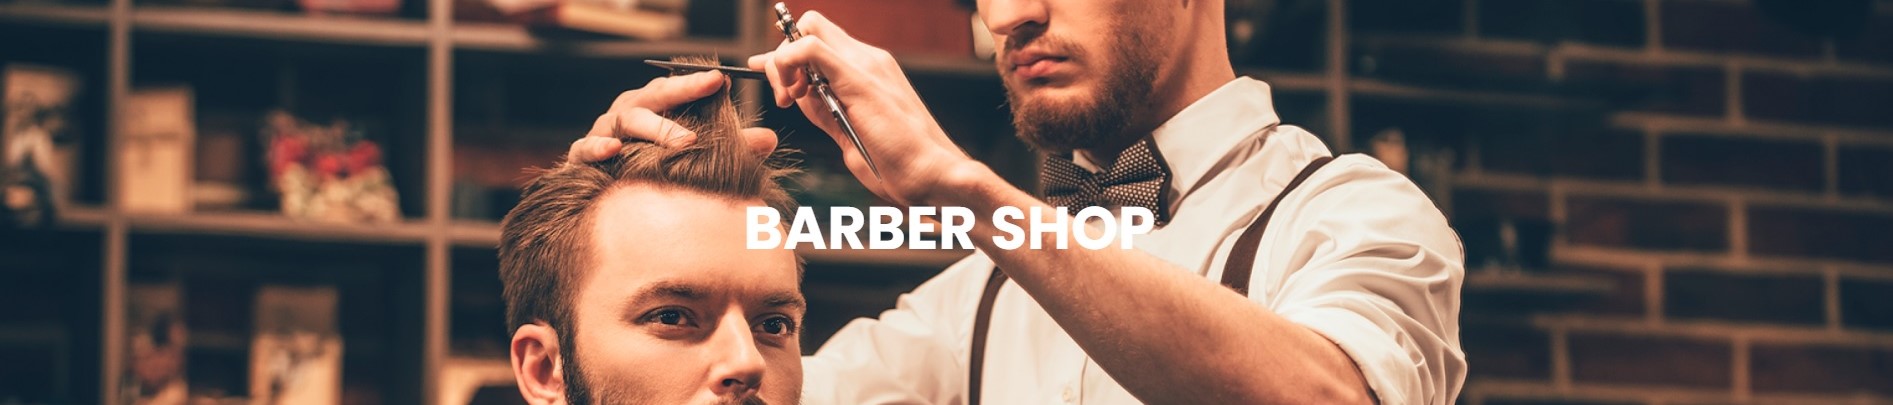 Distribuidor Productos Barber Shop